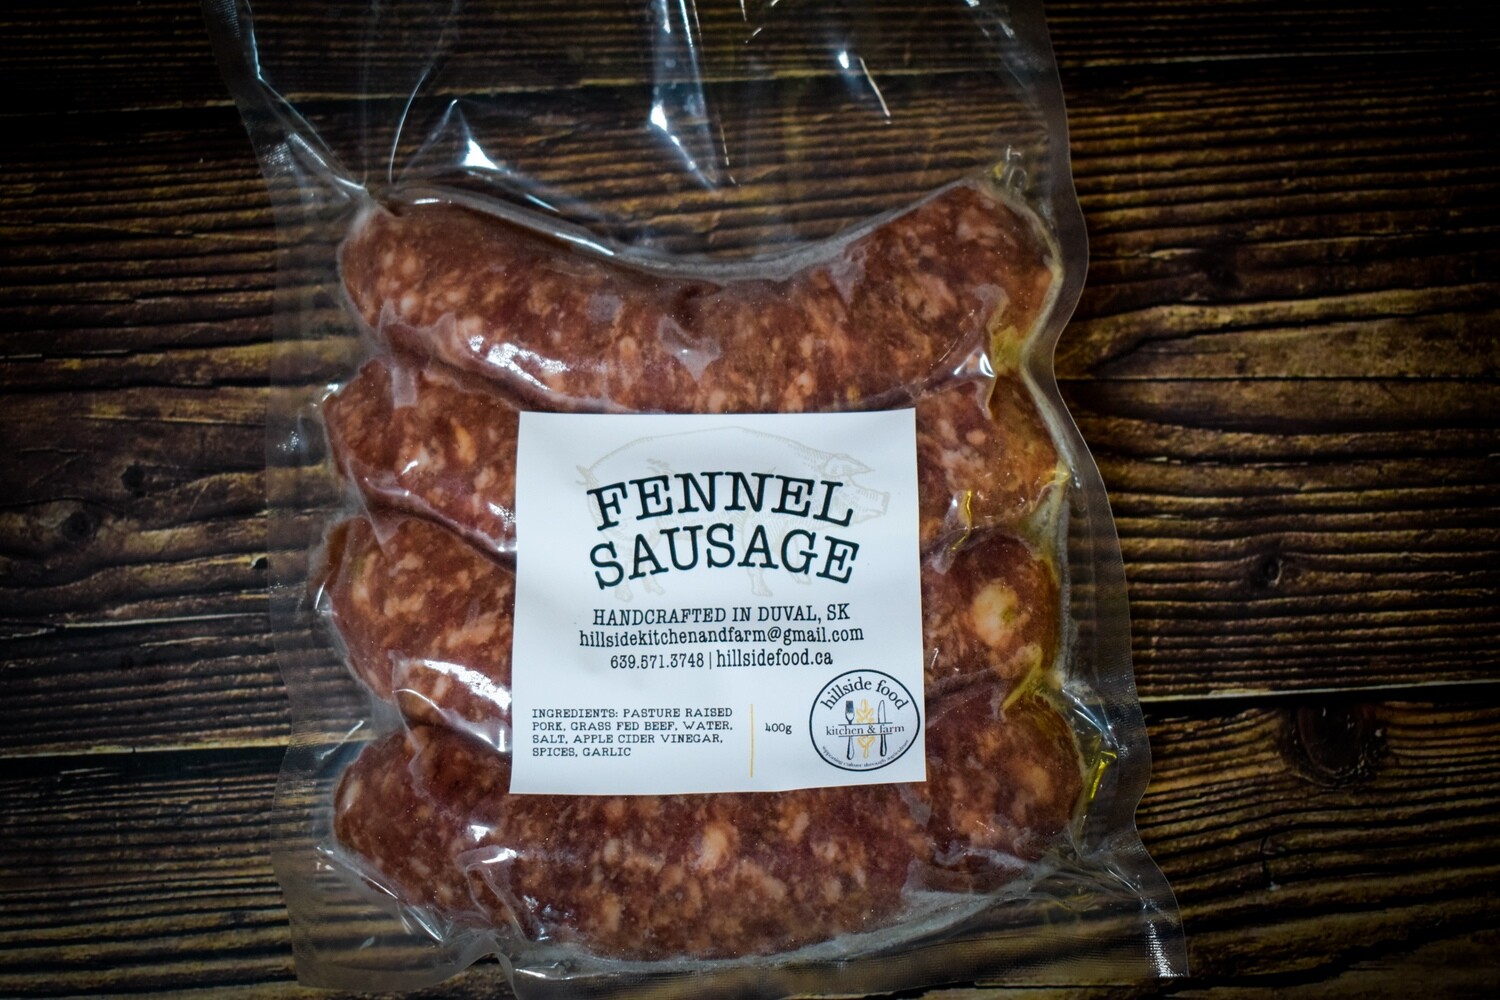 Fennel Sausage